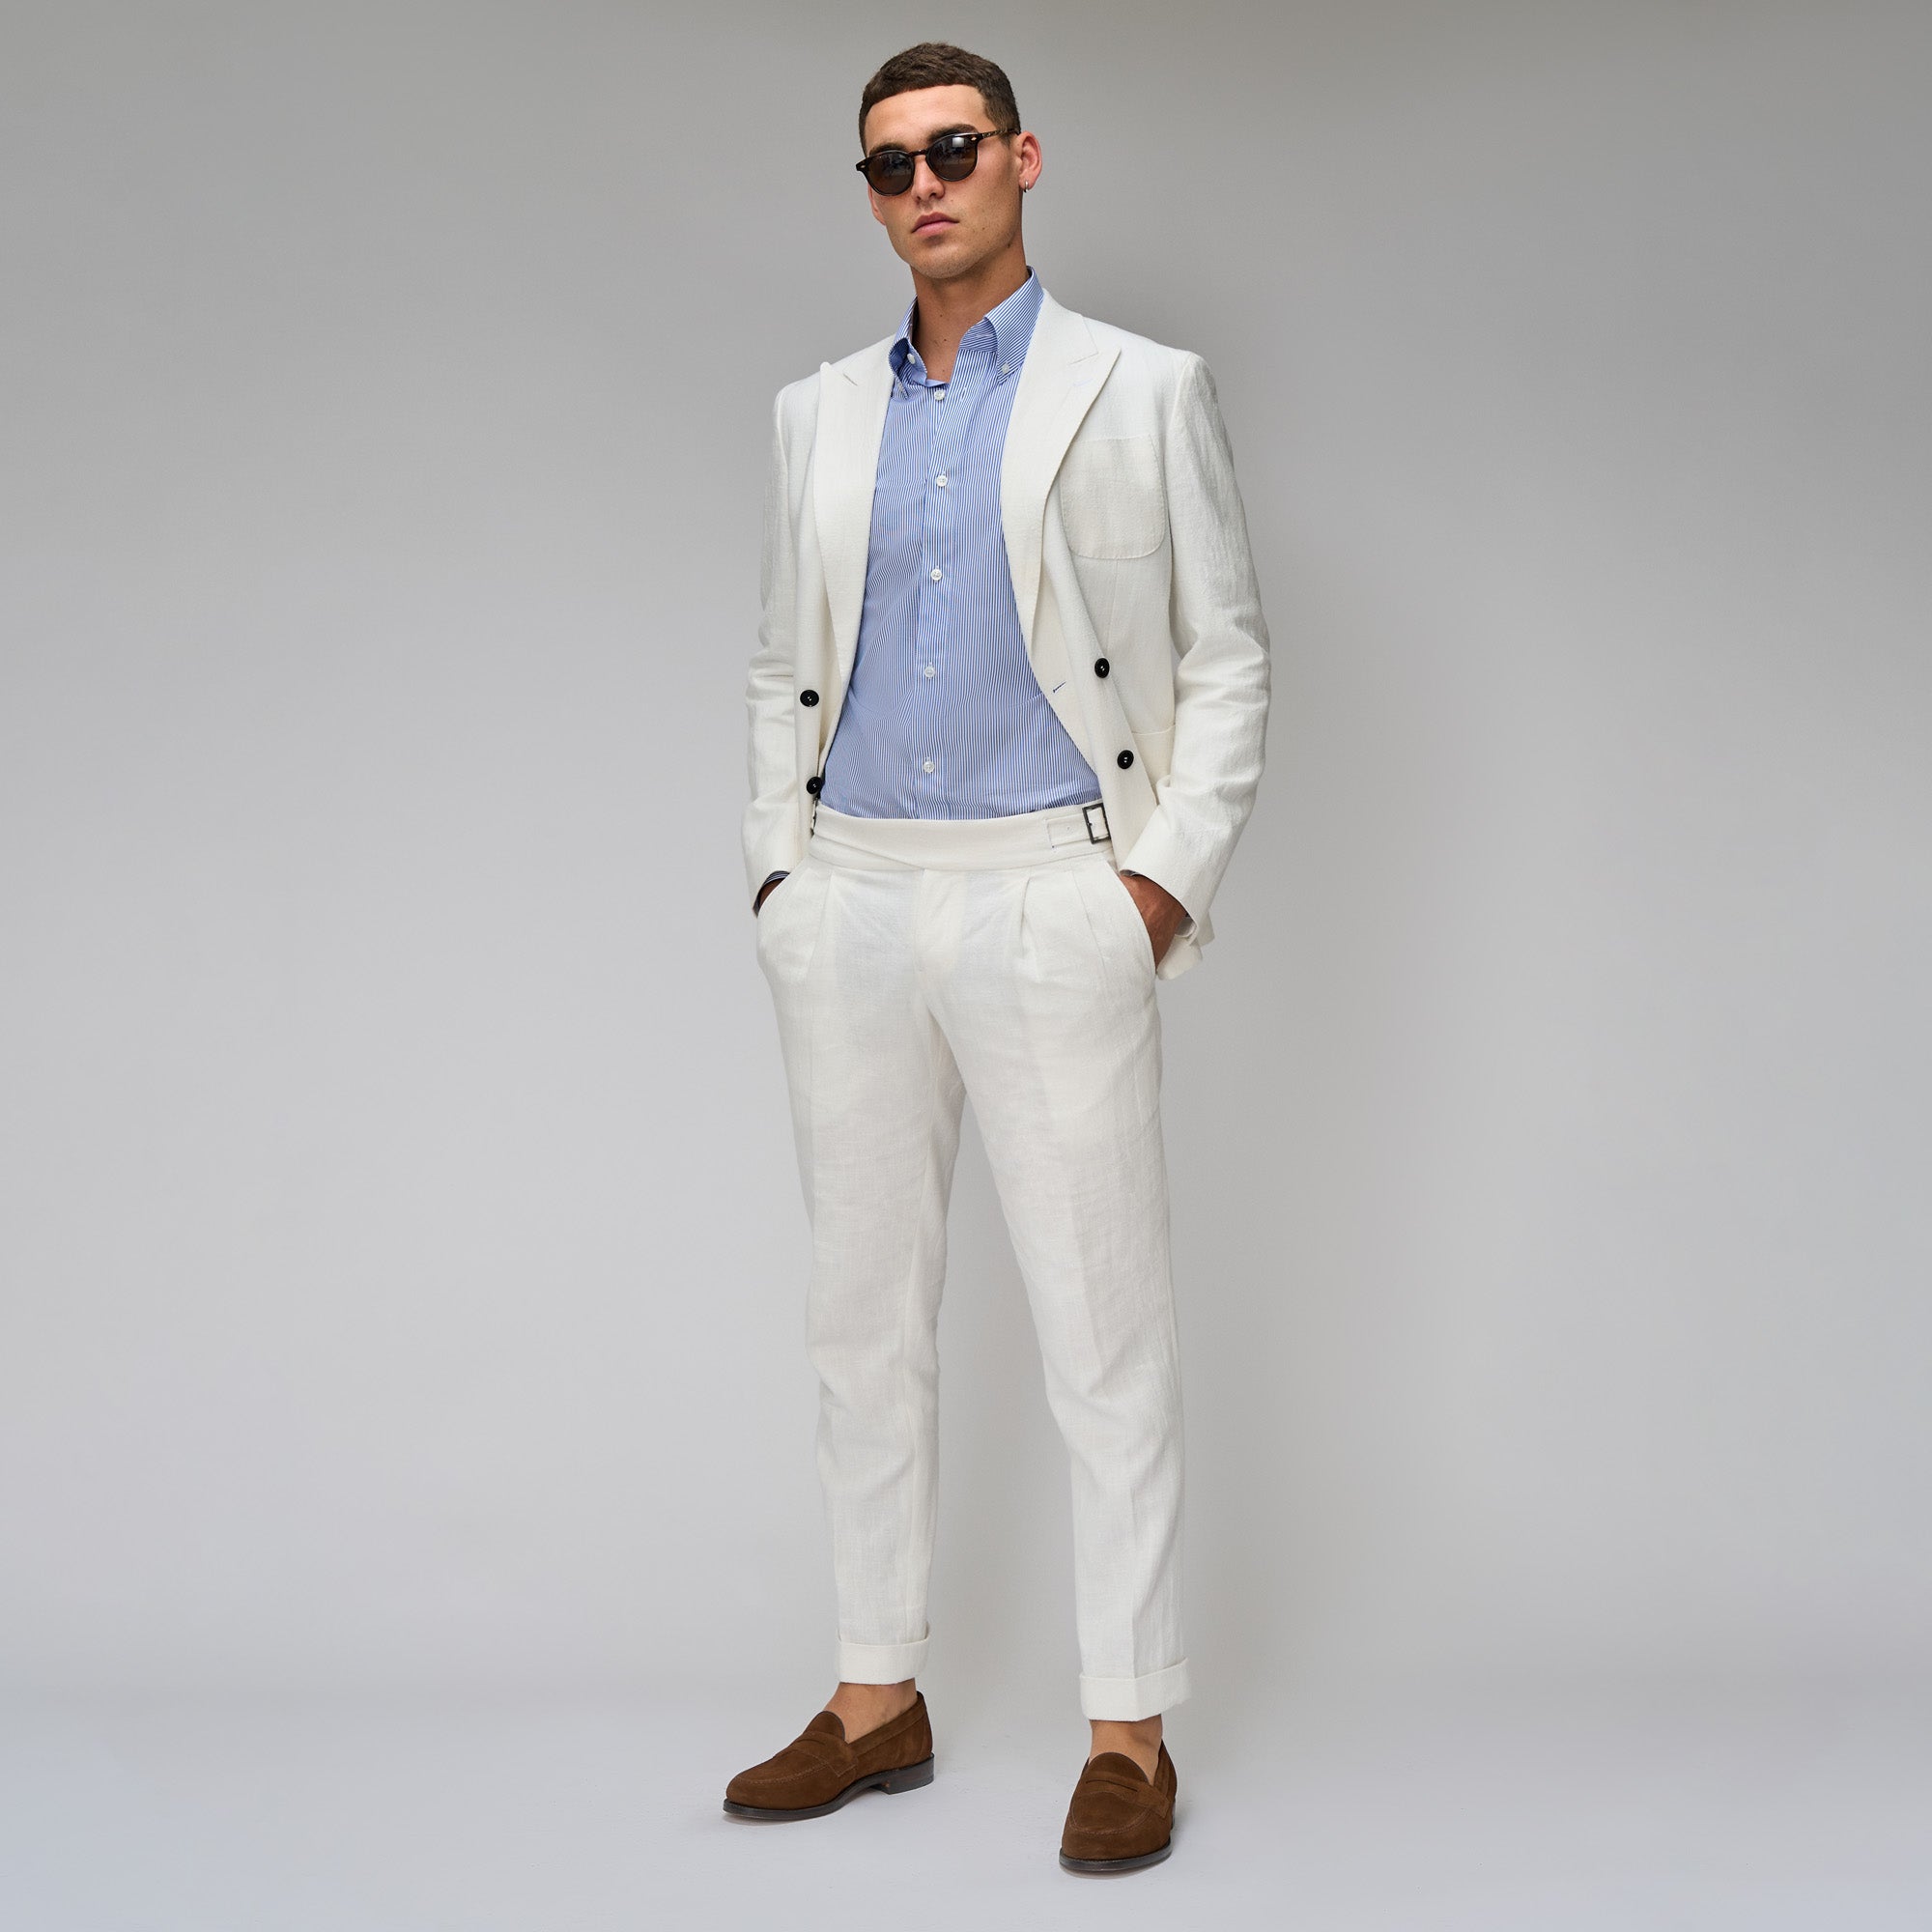 https://brentwilson.com.au/cdn/shop/products/white-linen-suit-921909.jpg?v=1694066012